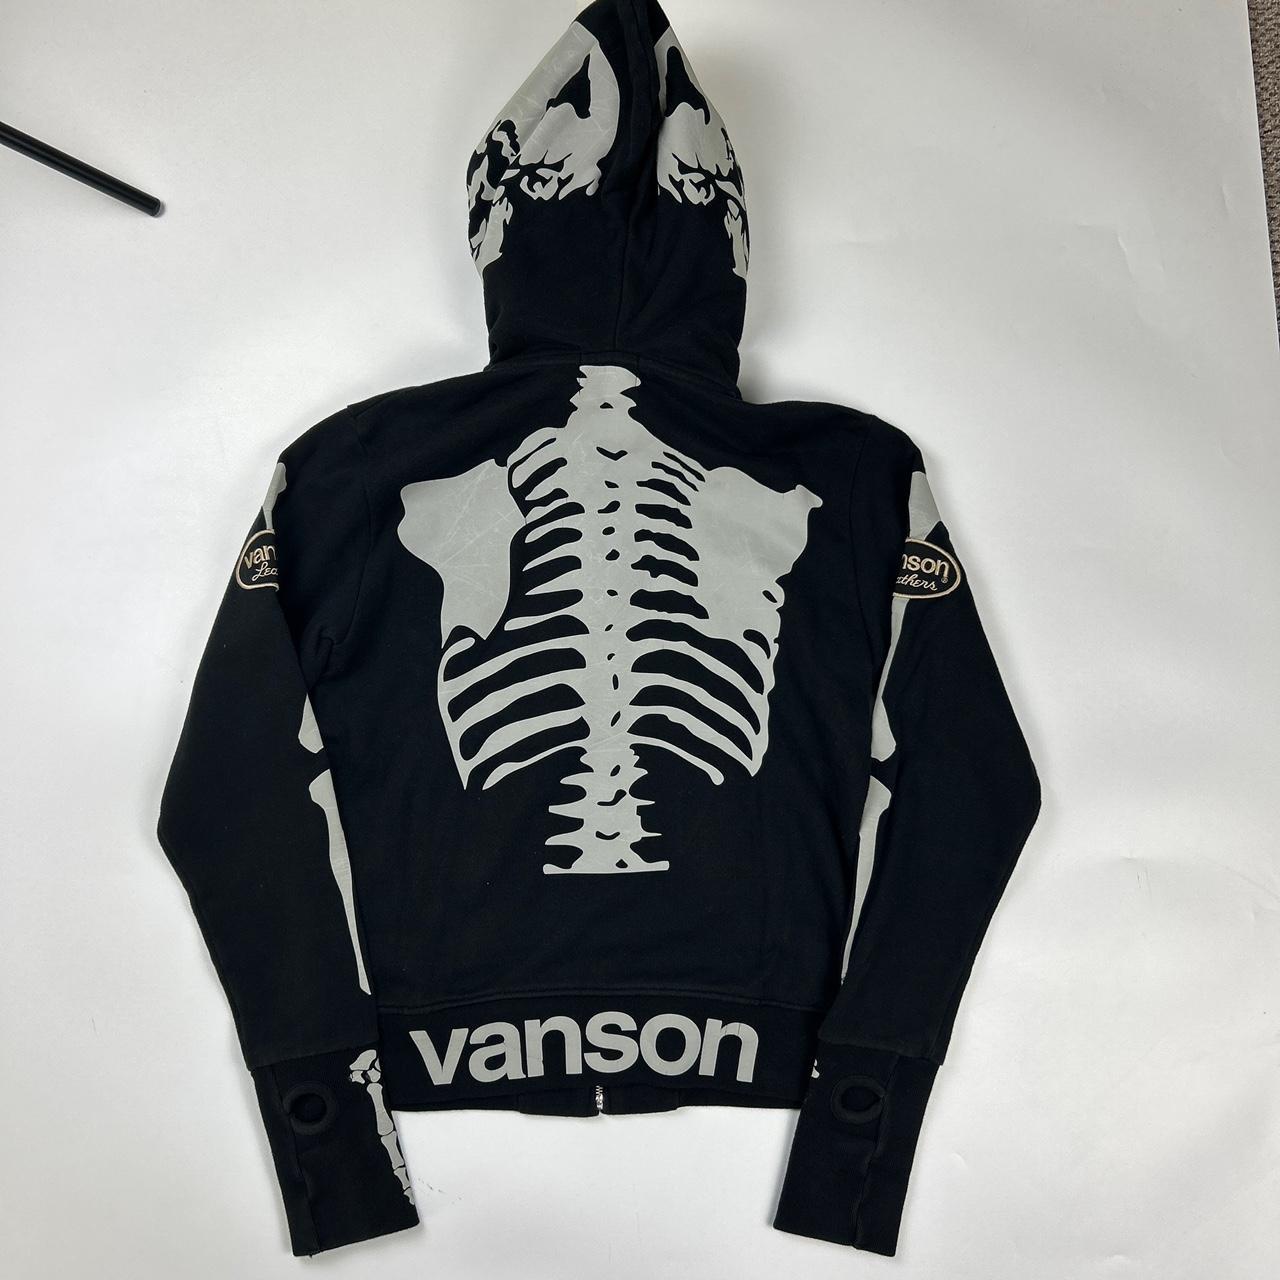 Vanson Skeleton Hoodie (M)